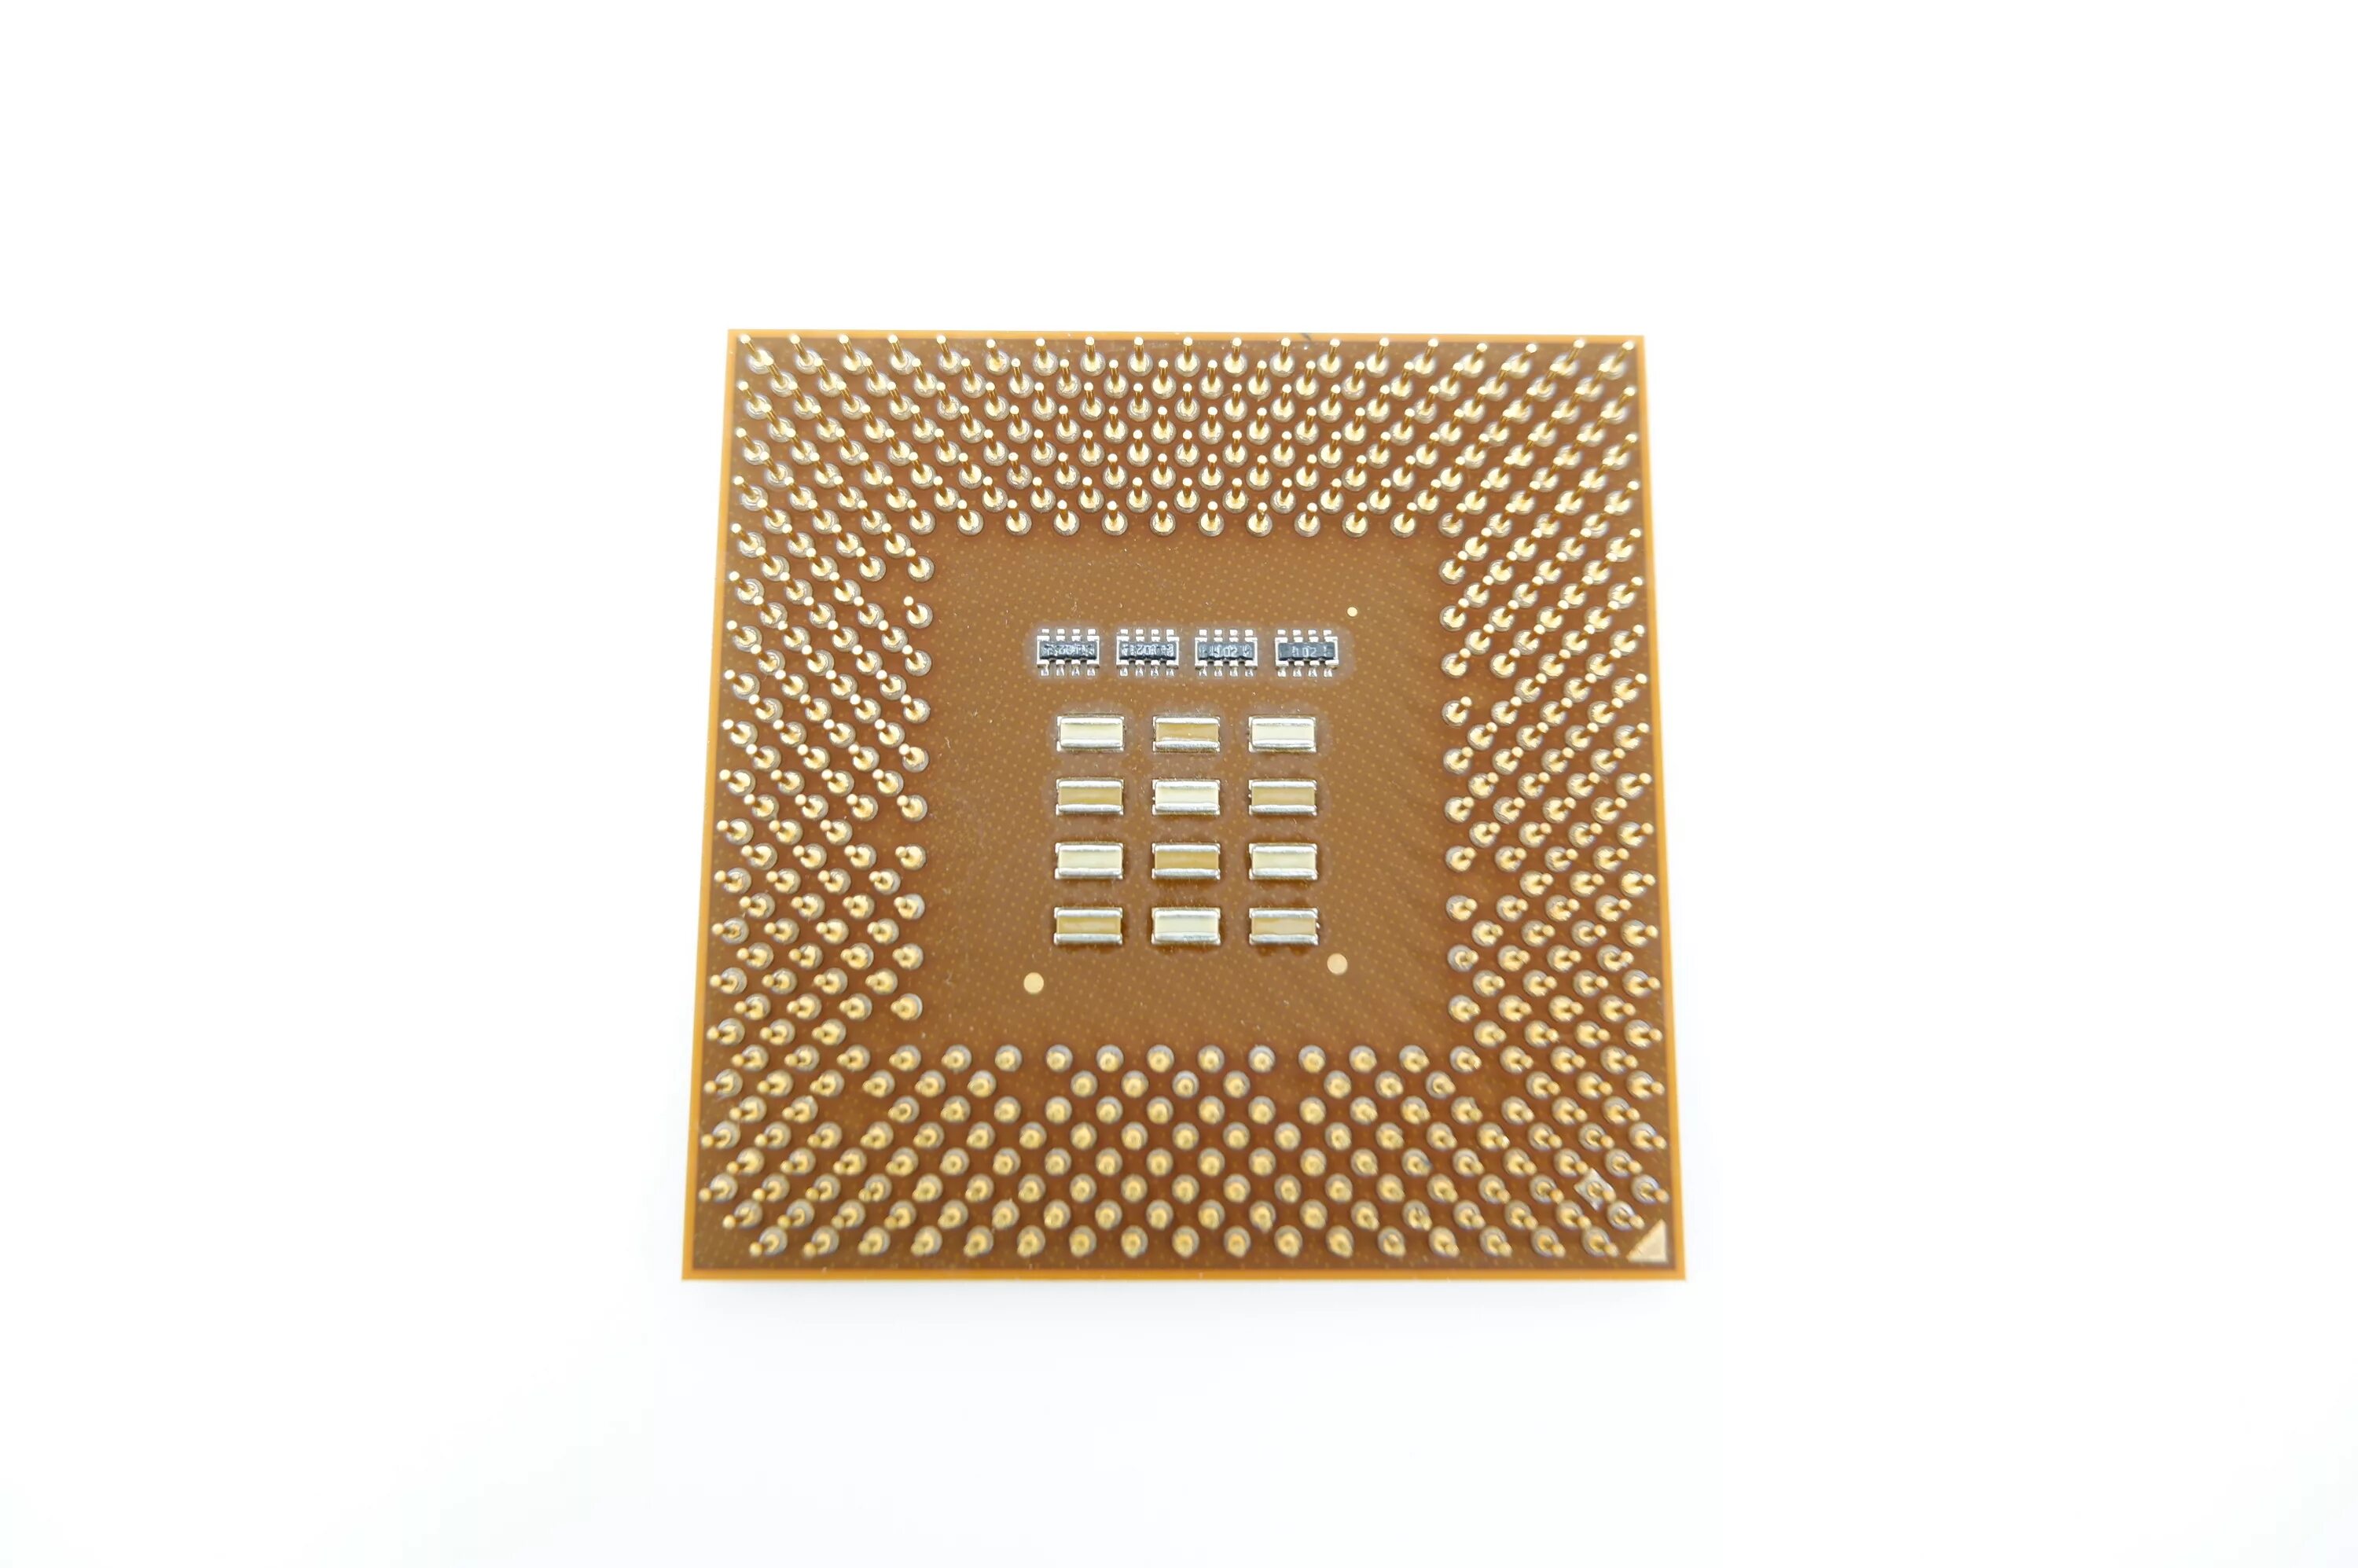 Купить процессор 1700. Athlon XP 1700+. АМД процессор для сокета 462. Сокет процессора Intel 1700. Процессор AMD 1700+.